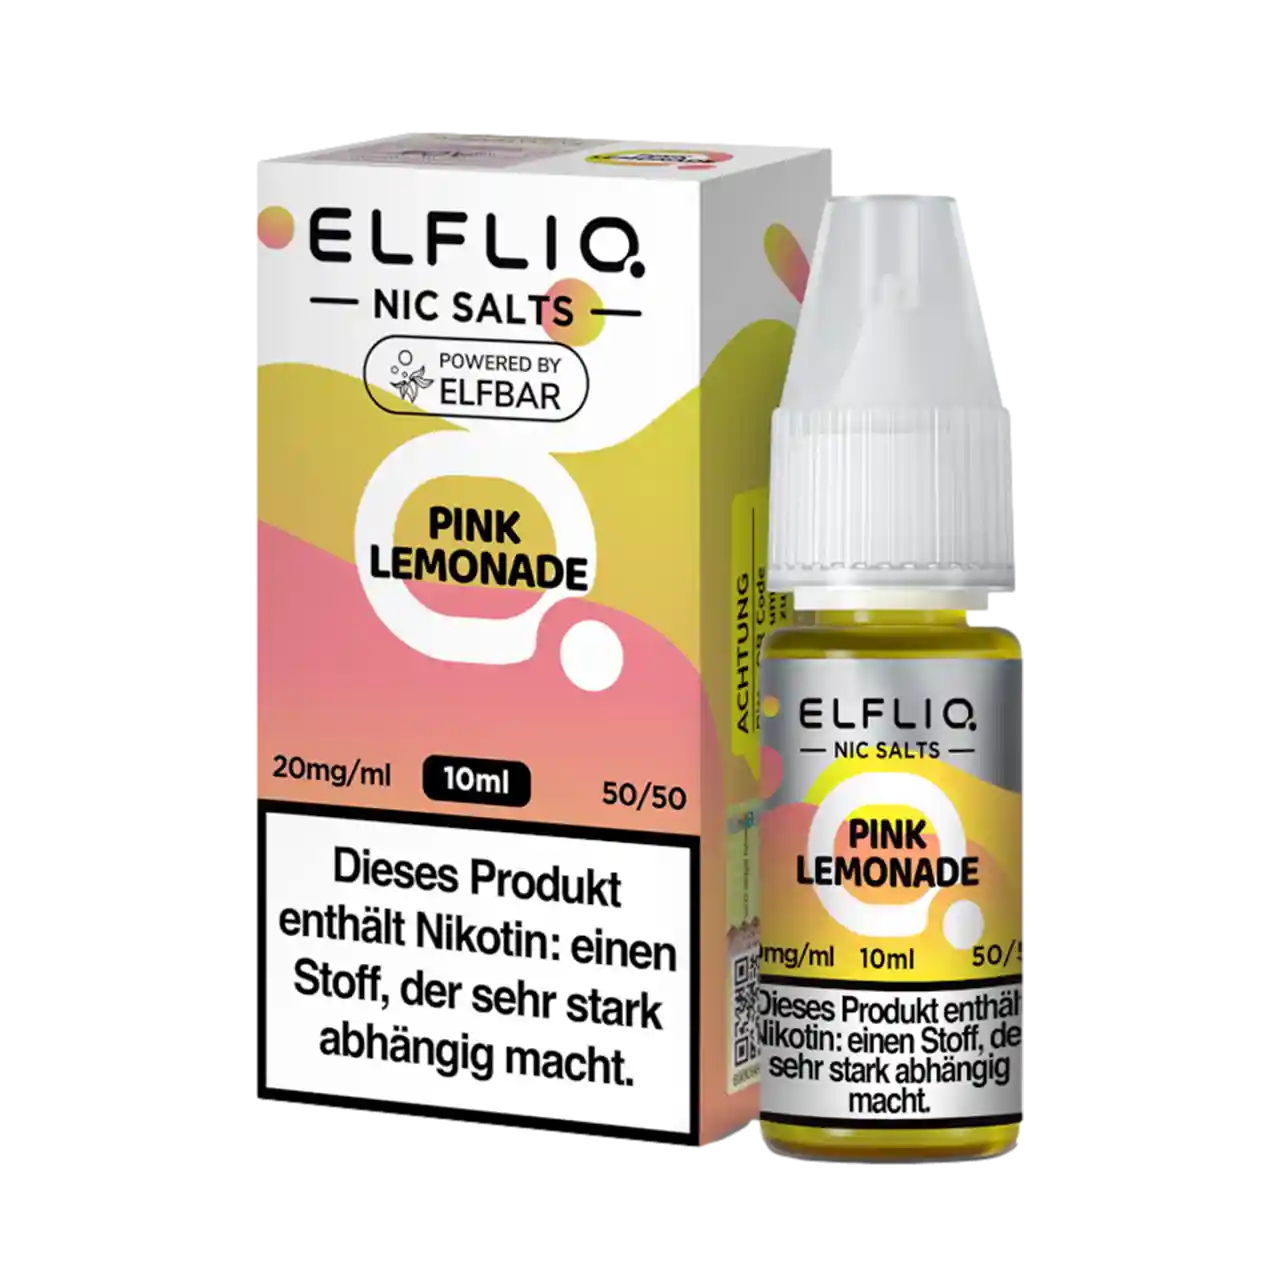 Elfliq Pink Lemonade Nic Salt Liquid mit Verpackung